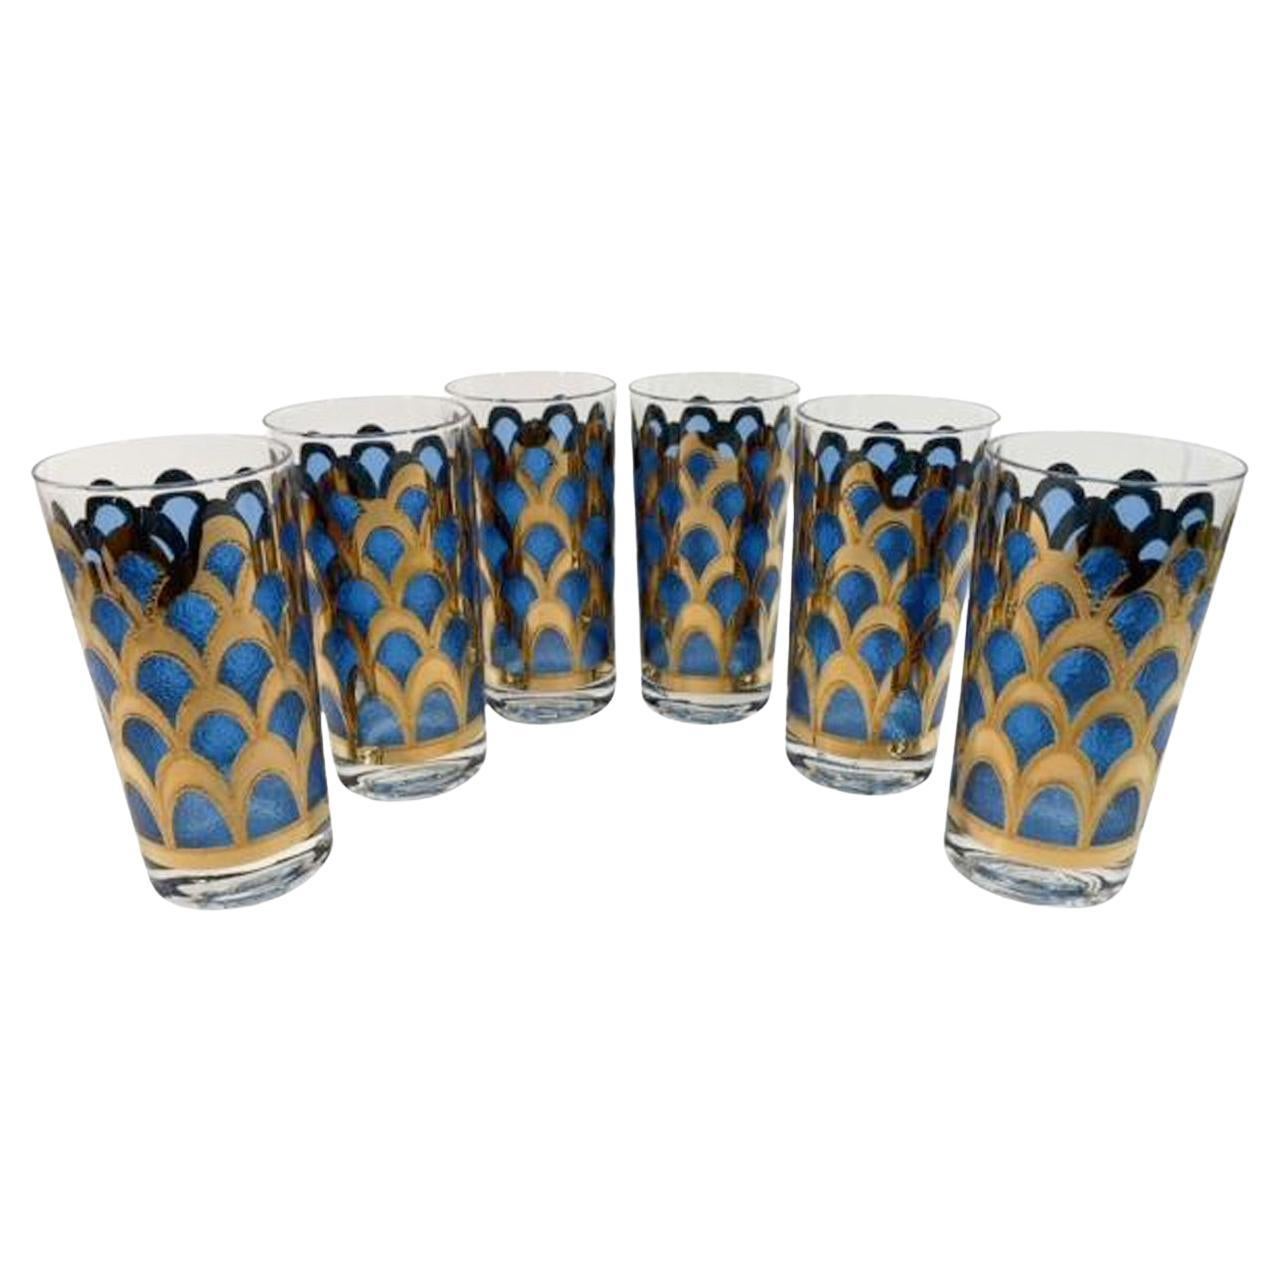 Vintage Highball Glasses Designed by Irene Pasinski Translucent Blue & 22k Gold